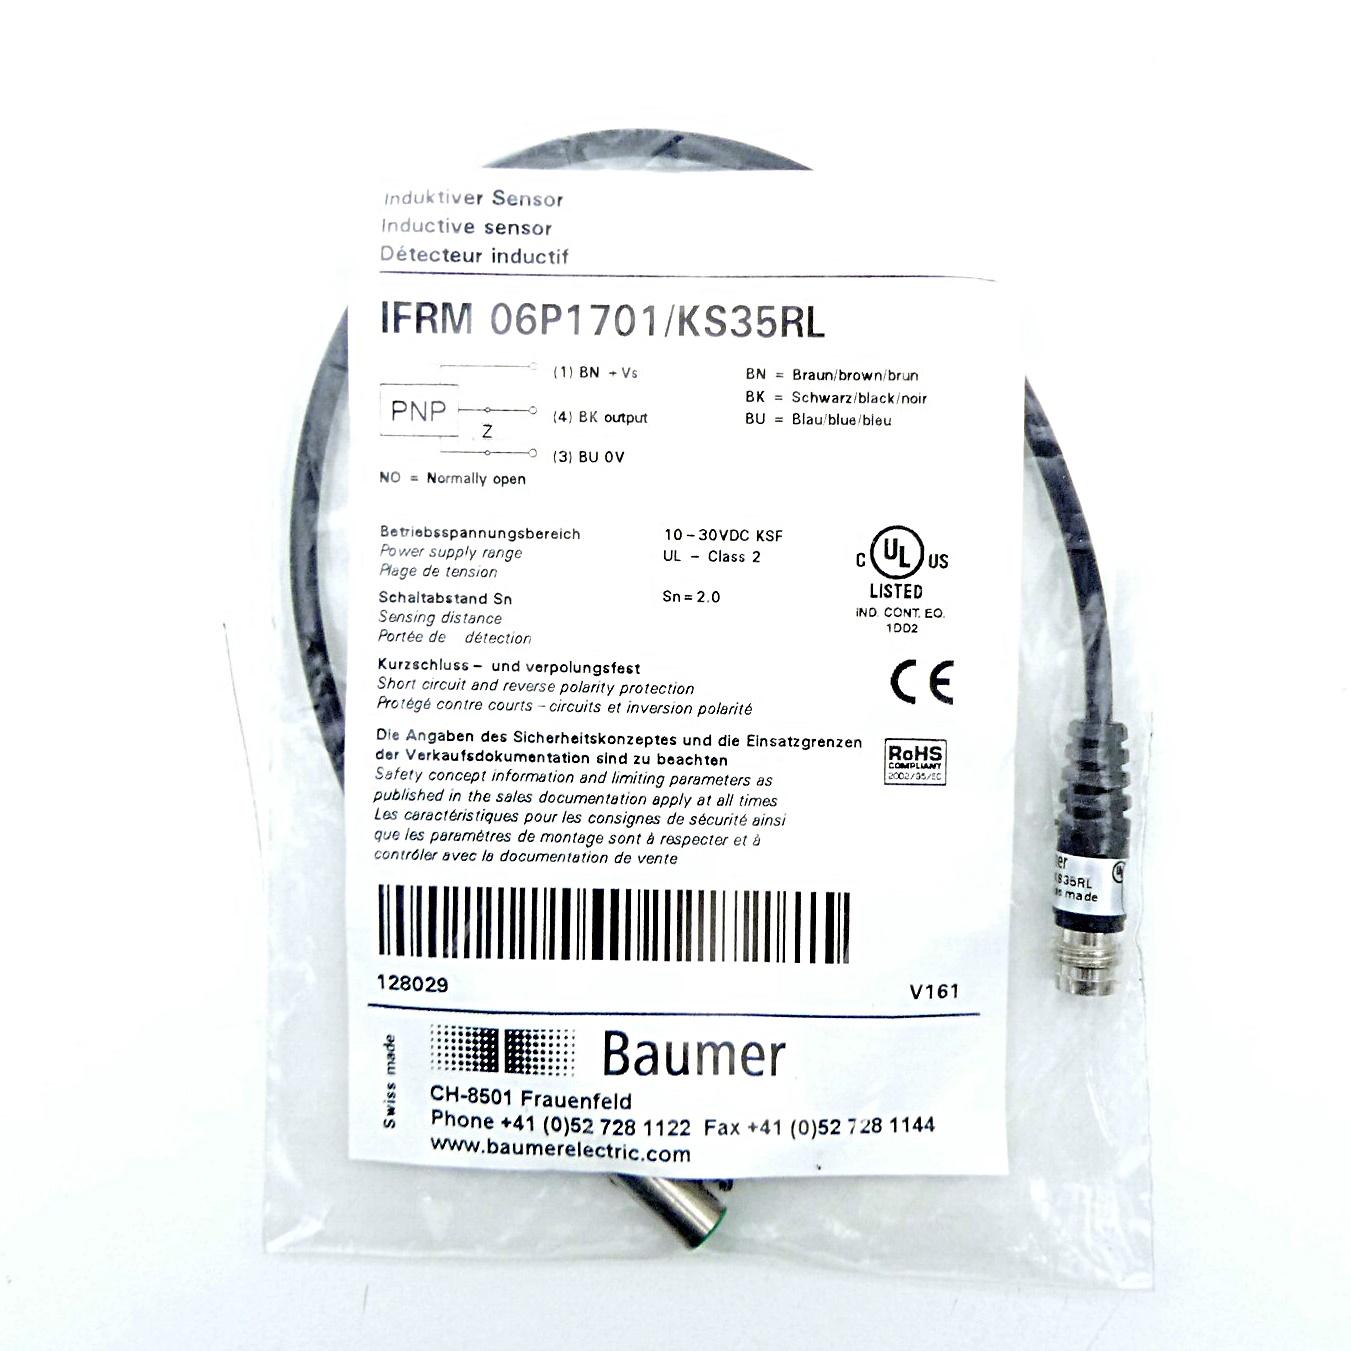 Produktfoto 2 von BAUMER Induktiver Sensor IFRM 06P1701/KS35RL